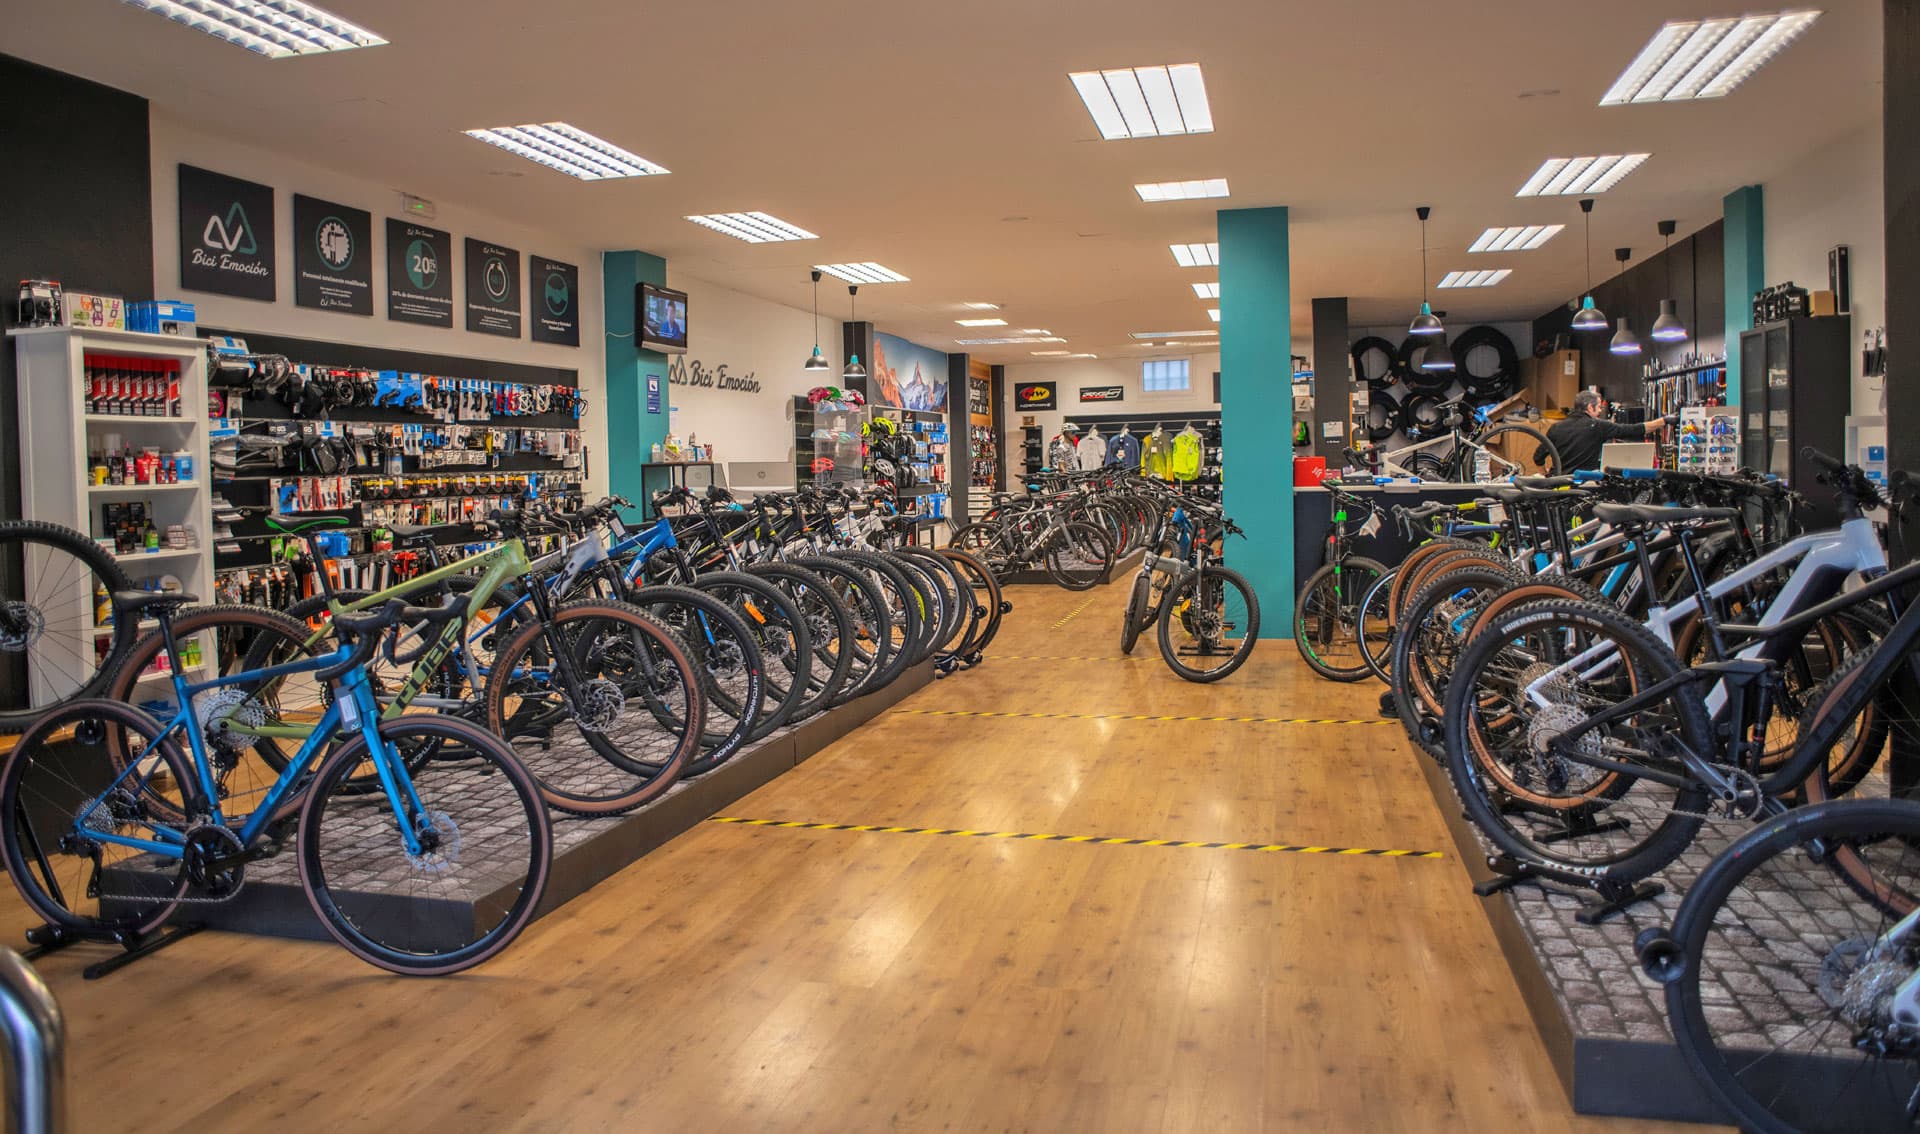  Bici Emoción - Tu tienda de bicicletas en Ferrol